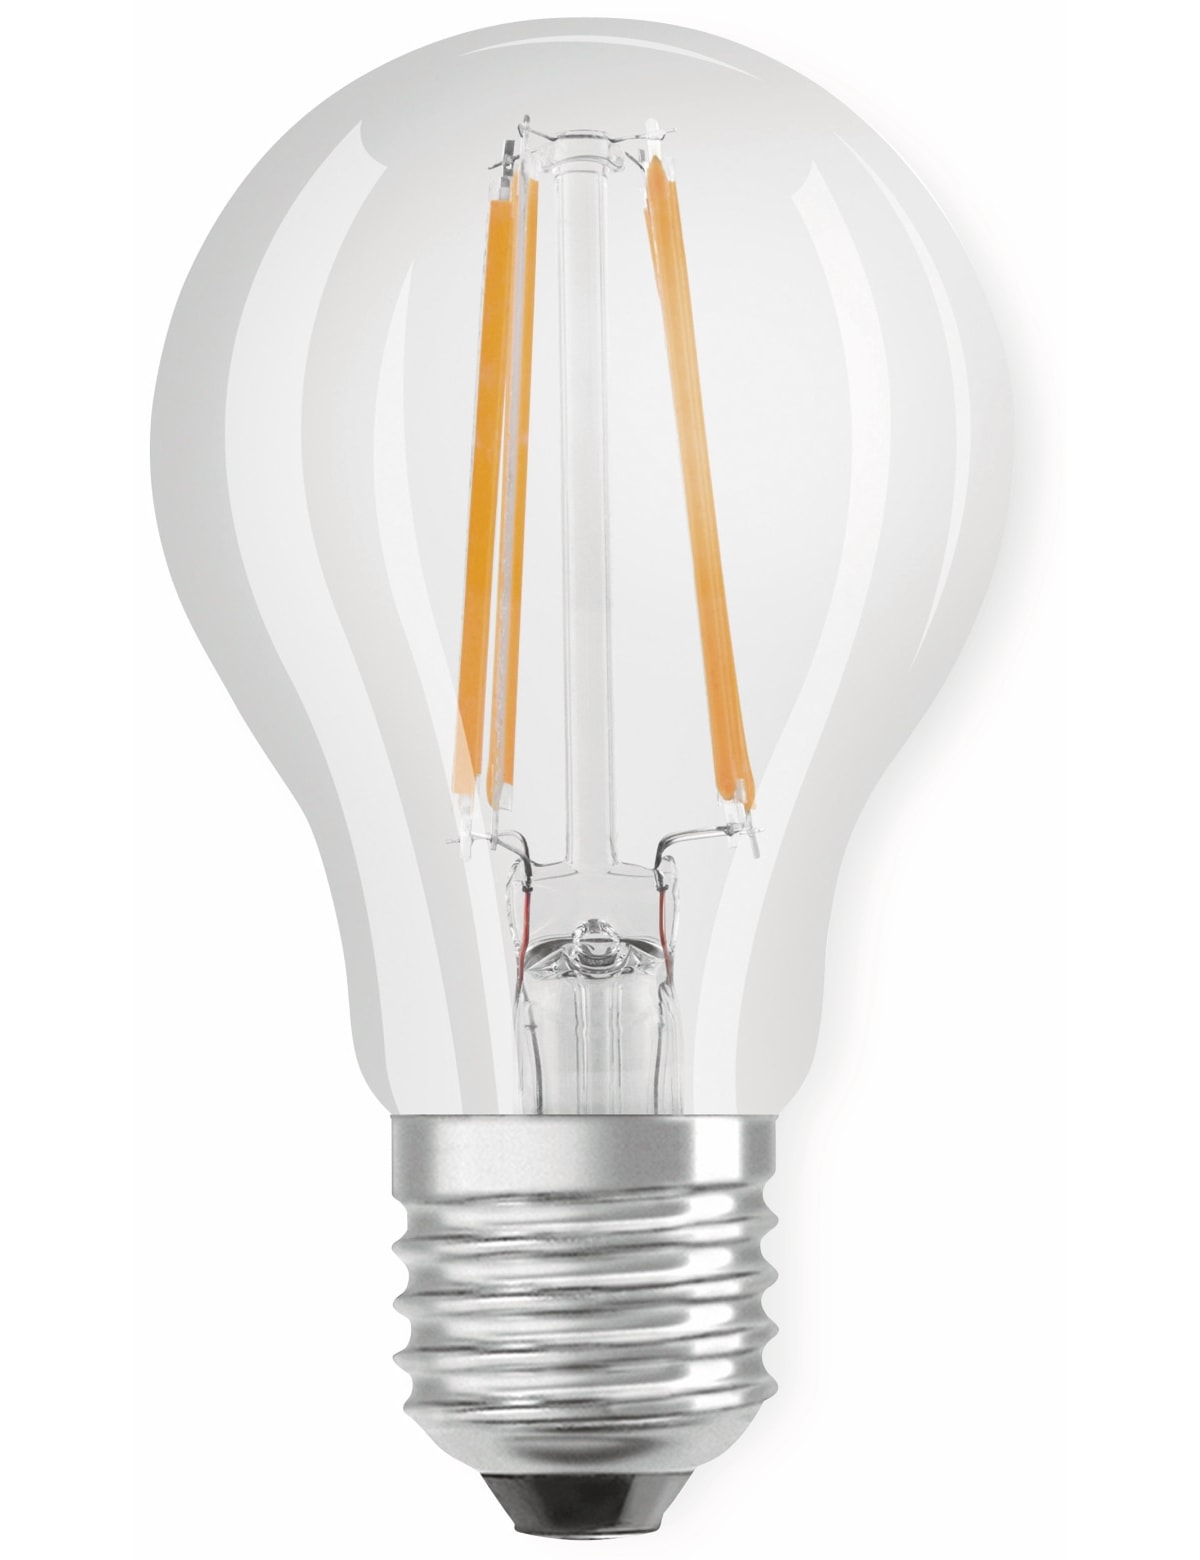 Bellalux LED-Lampe CLASSIC, E27, EEK: A++, 7 W, 806 lm, 2700 K